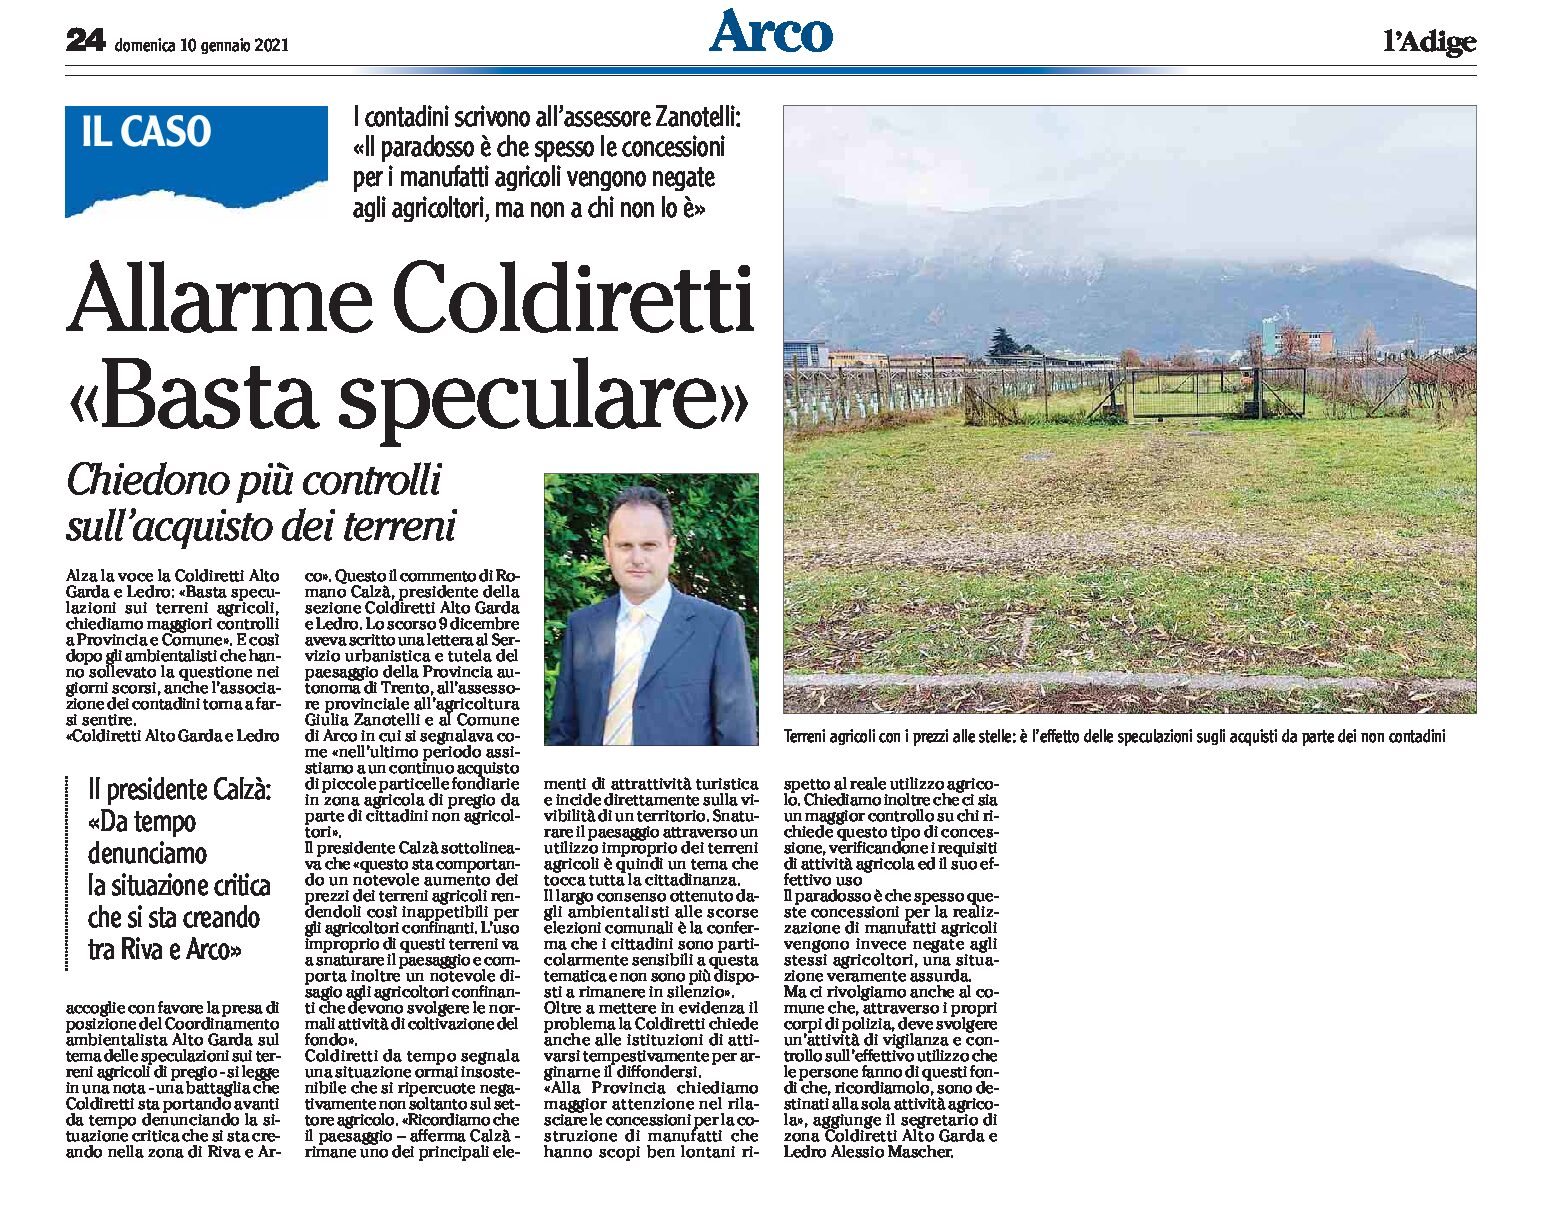 Tra Riva e Arco: allarme Coldiretti “basta speculare”, più controlli sull’acquisto dei terreni agricoli